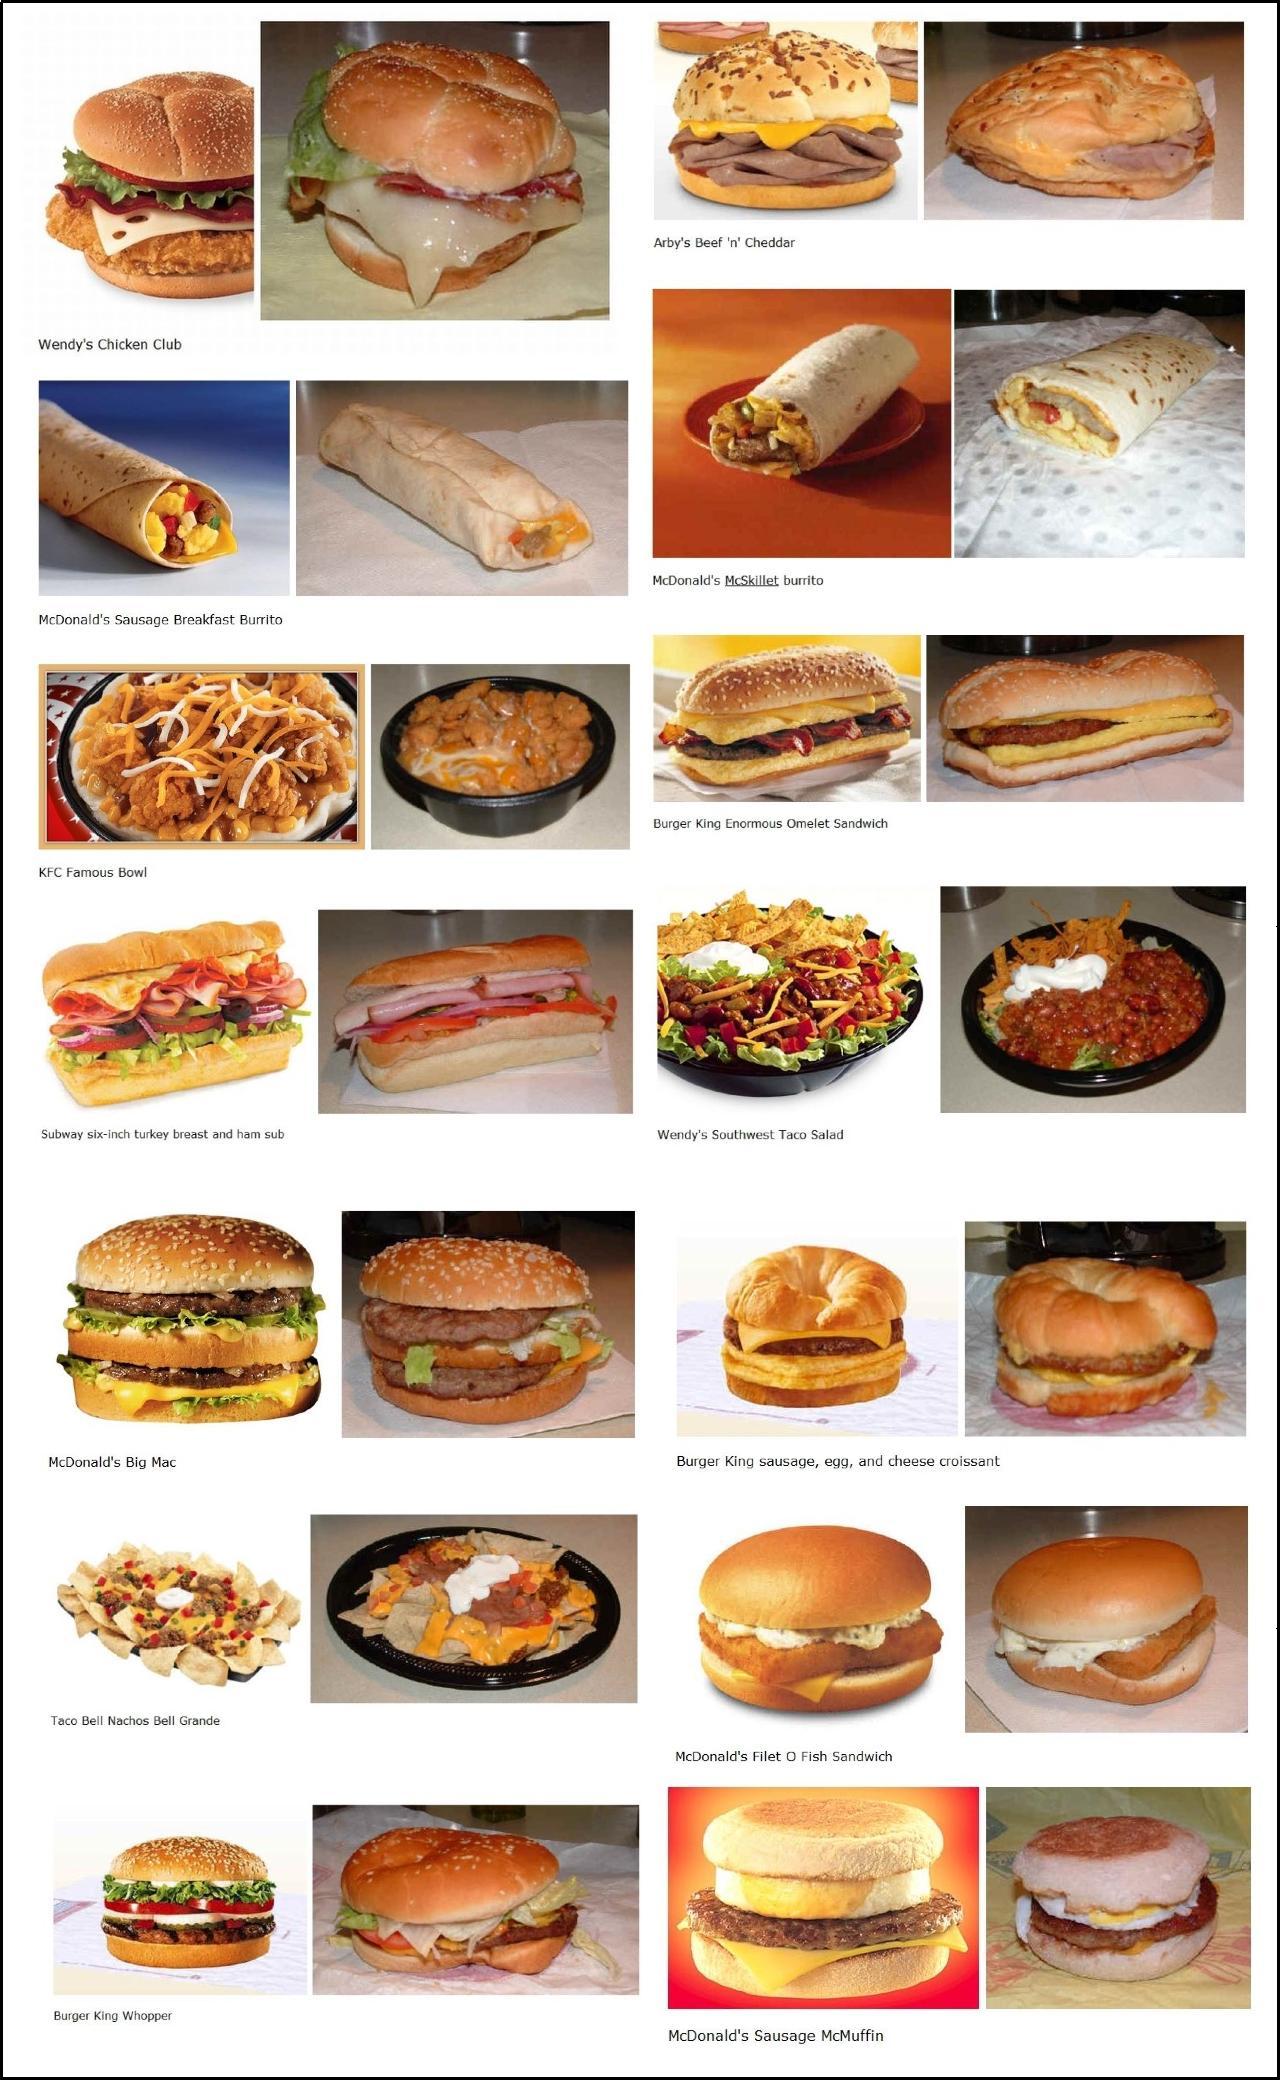 Les hamburgers entre publicité et réalité